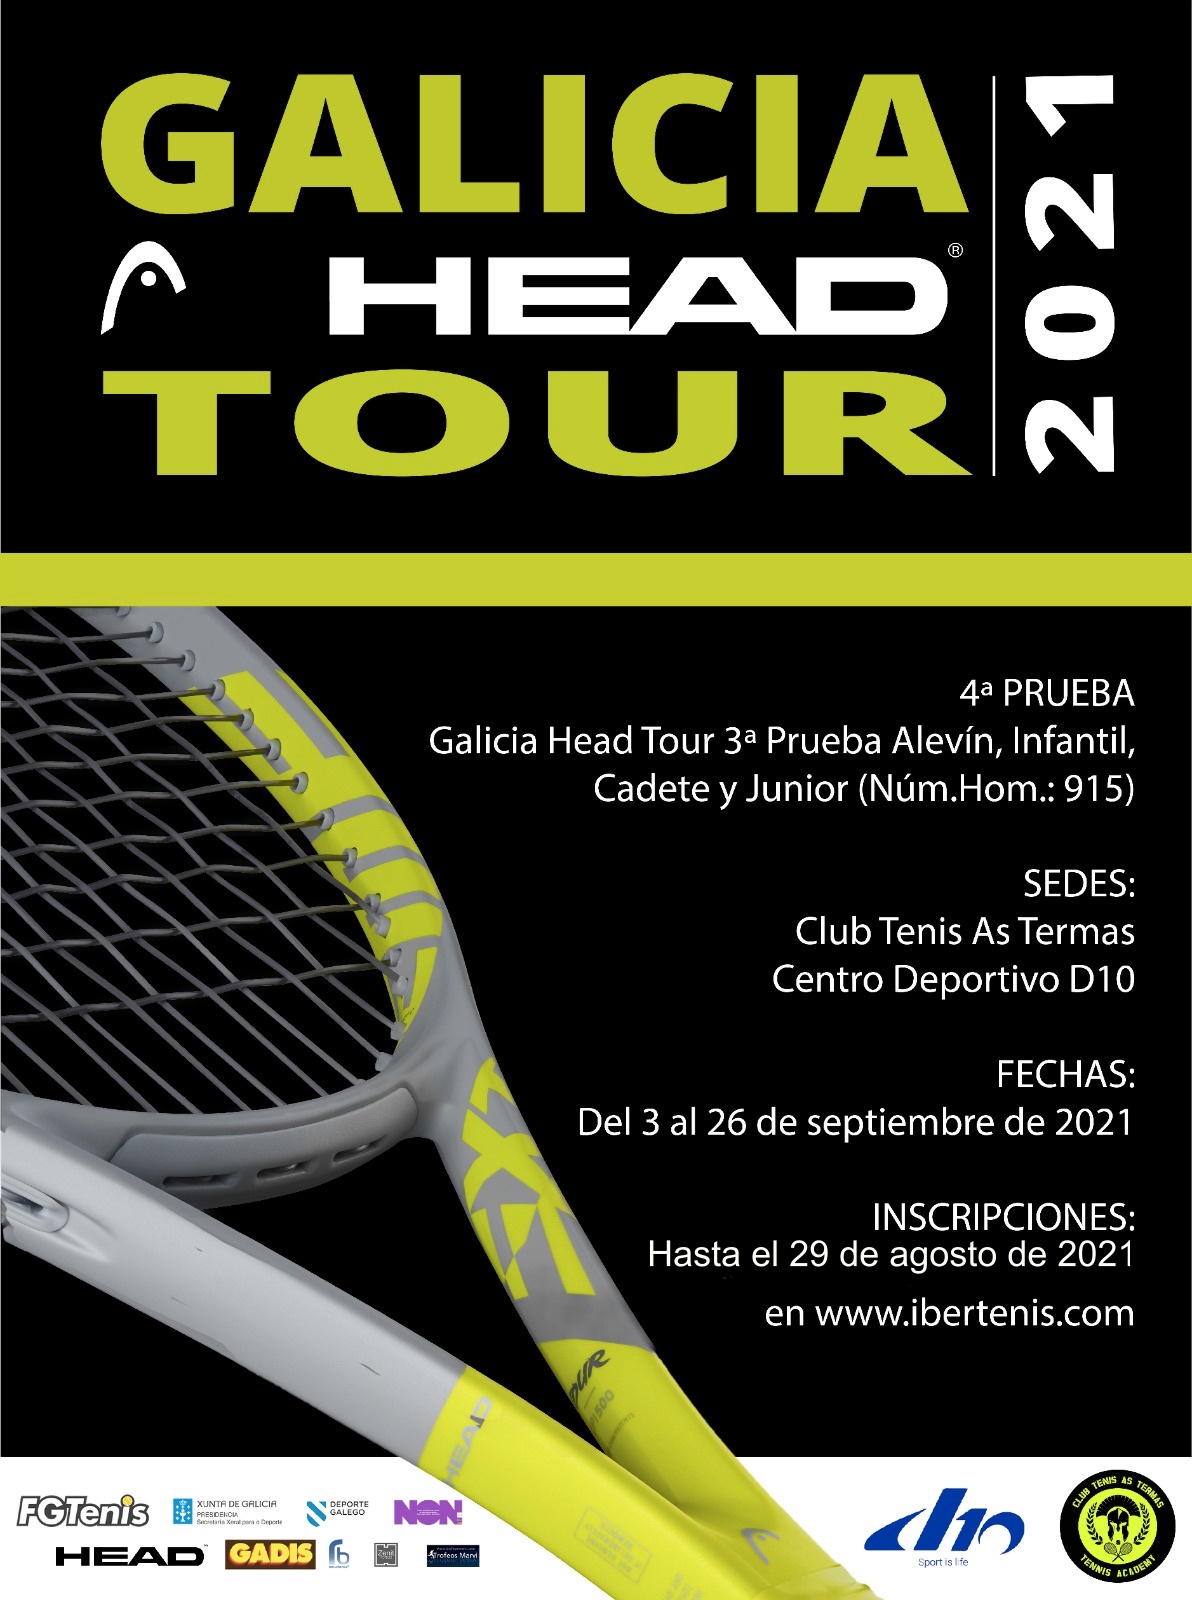 GALICIA HEAD TOUR LUGO (Alevín, Infantil, Cadete y Junior) + Benjamín